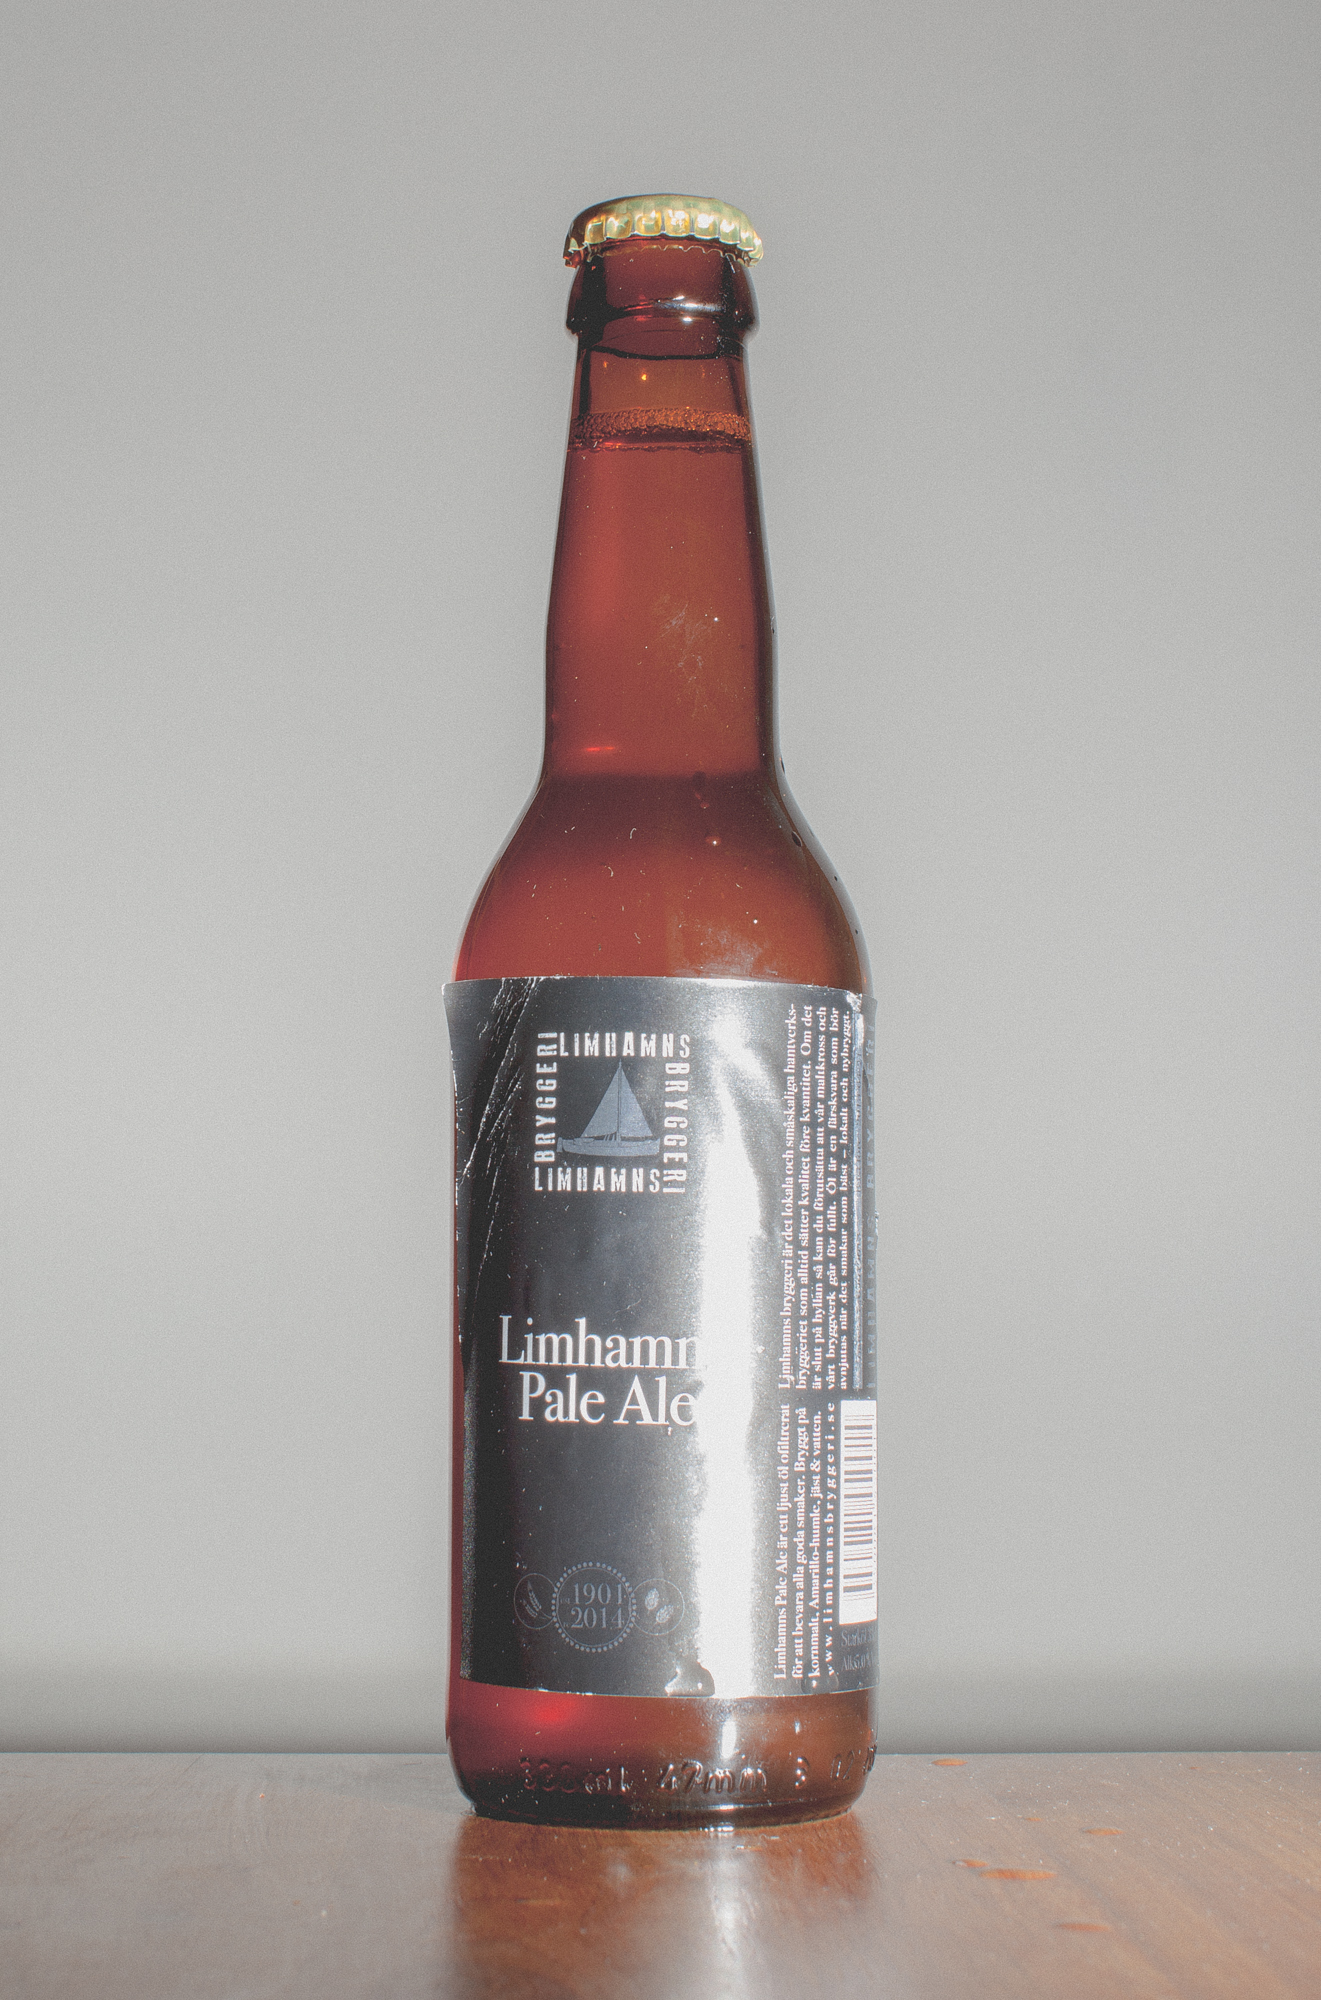 Limhamns Pale Ale